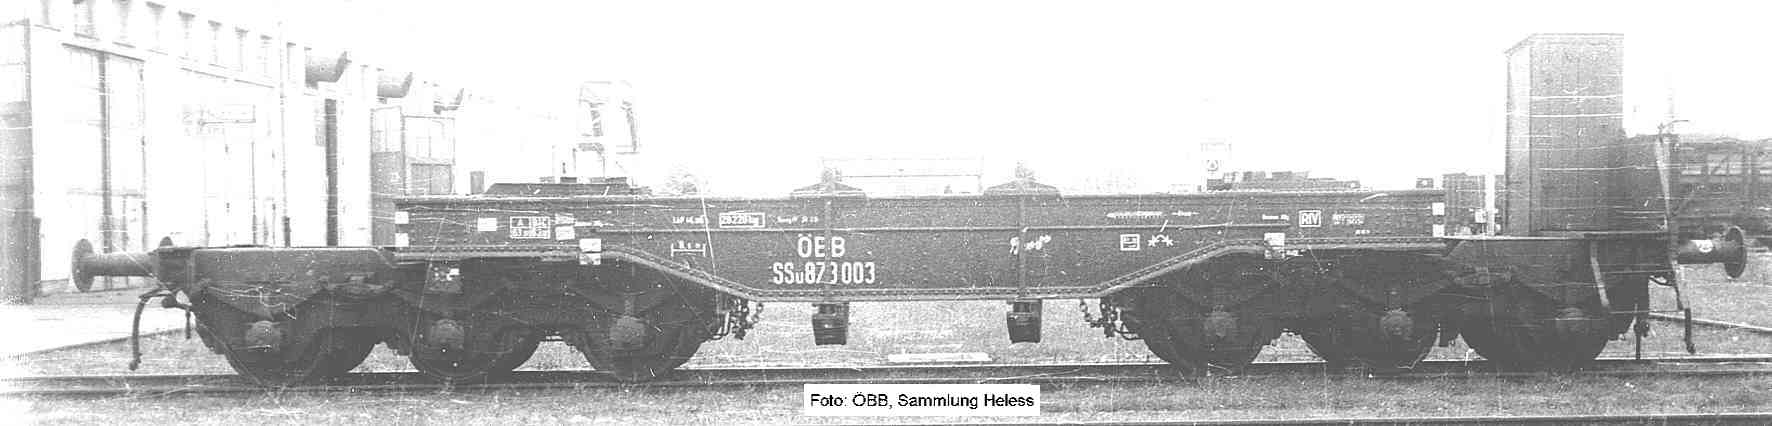 6-achsiger Tiefladewagen nach Skizze 11, ÖBB SSu 873 003; Foto: ÖBB, Sammlung Hermann Heless